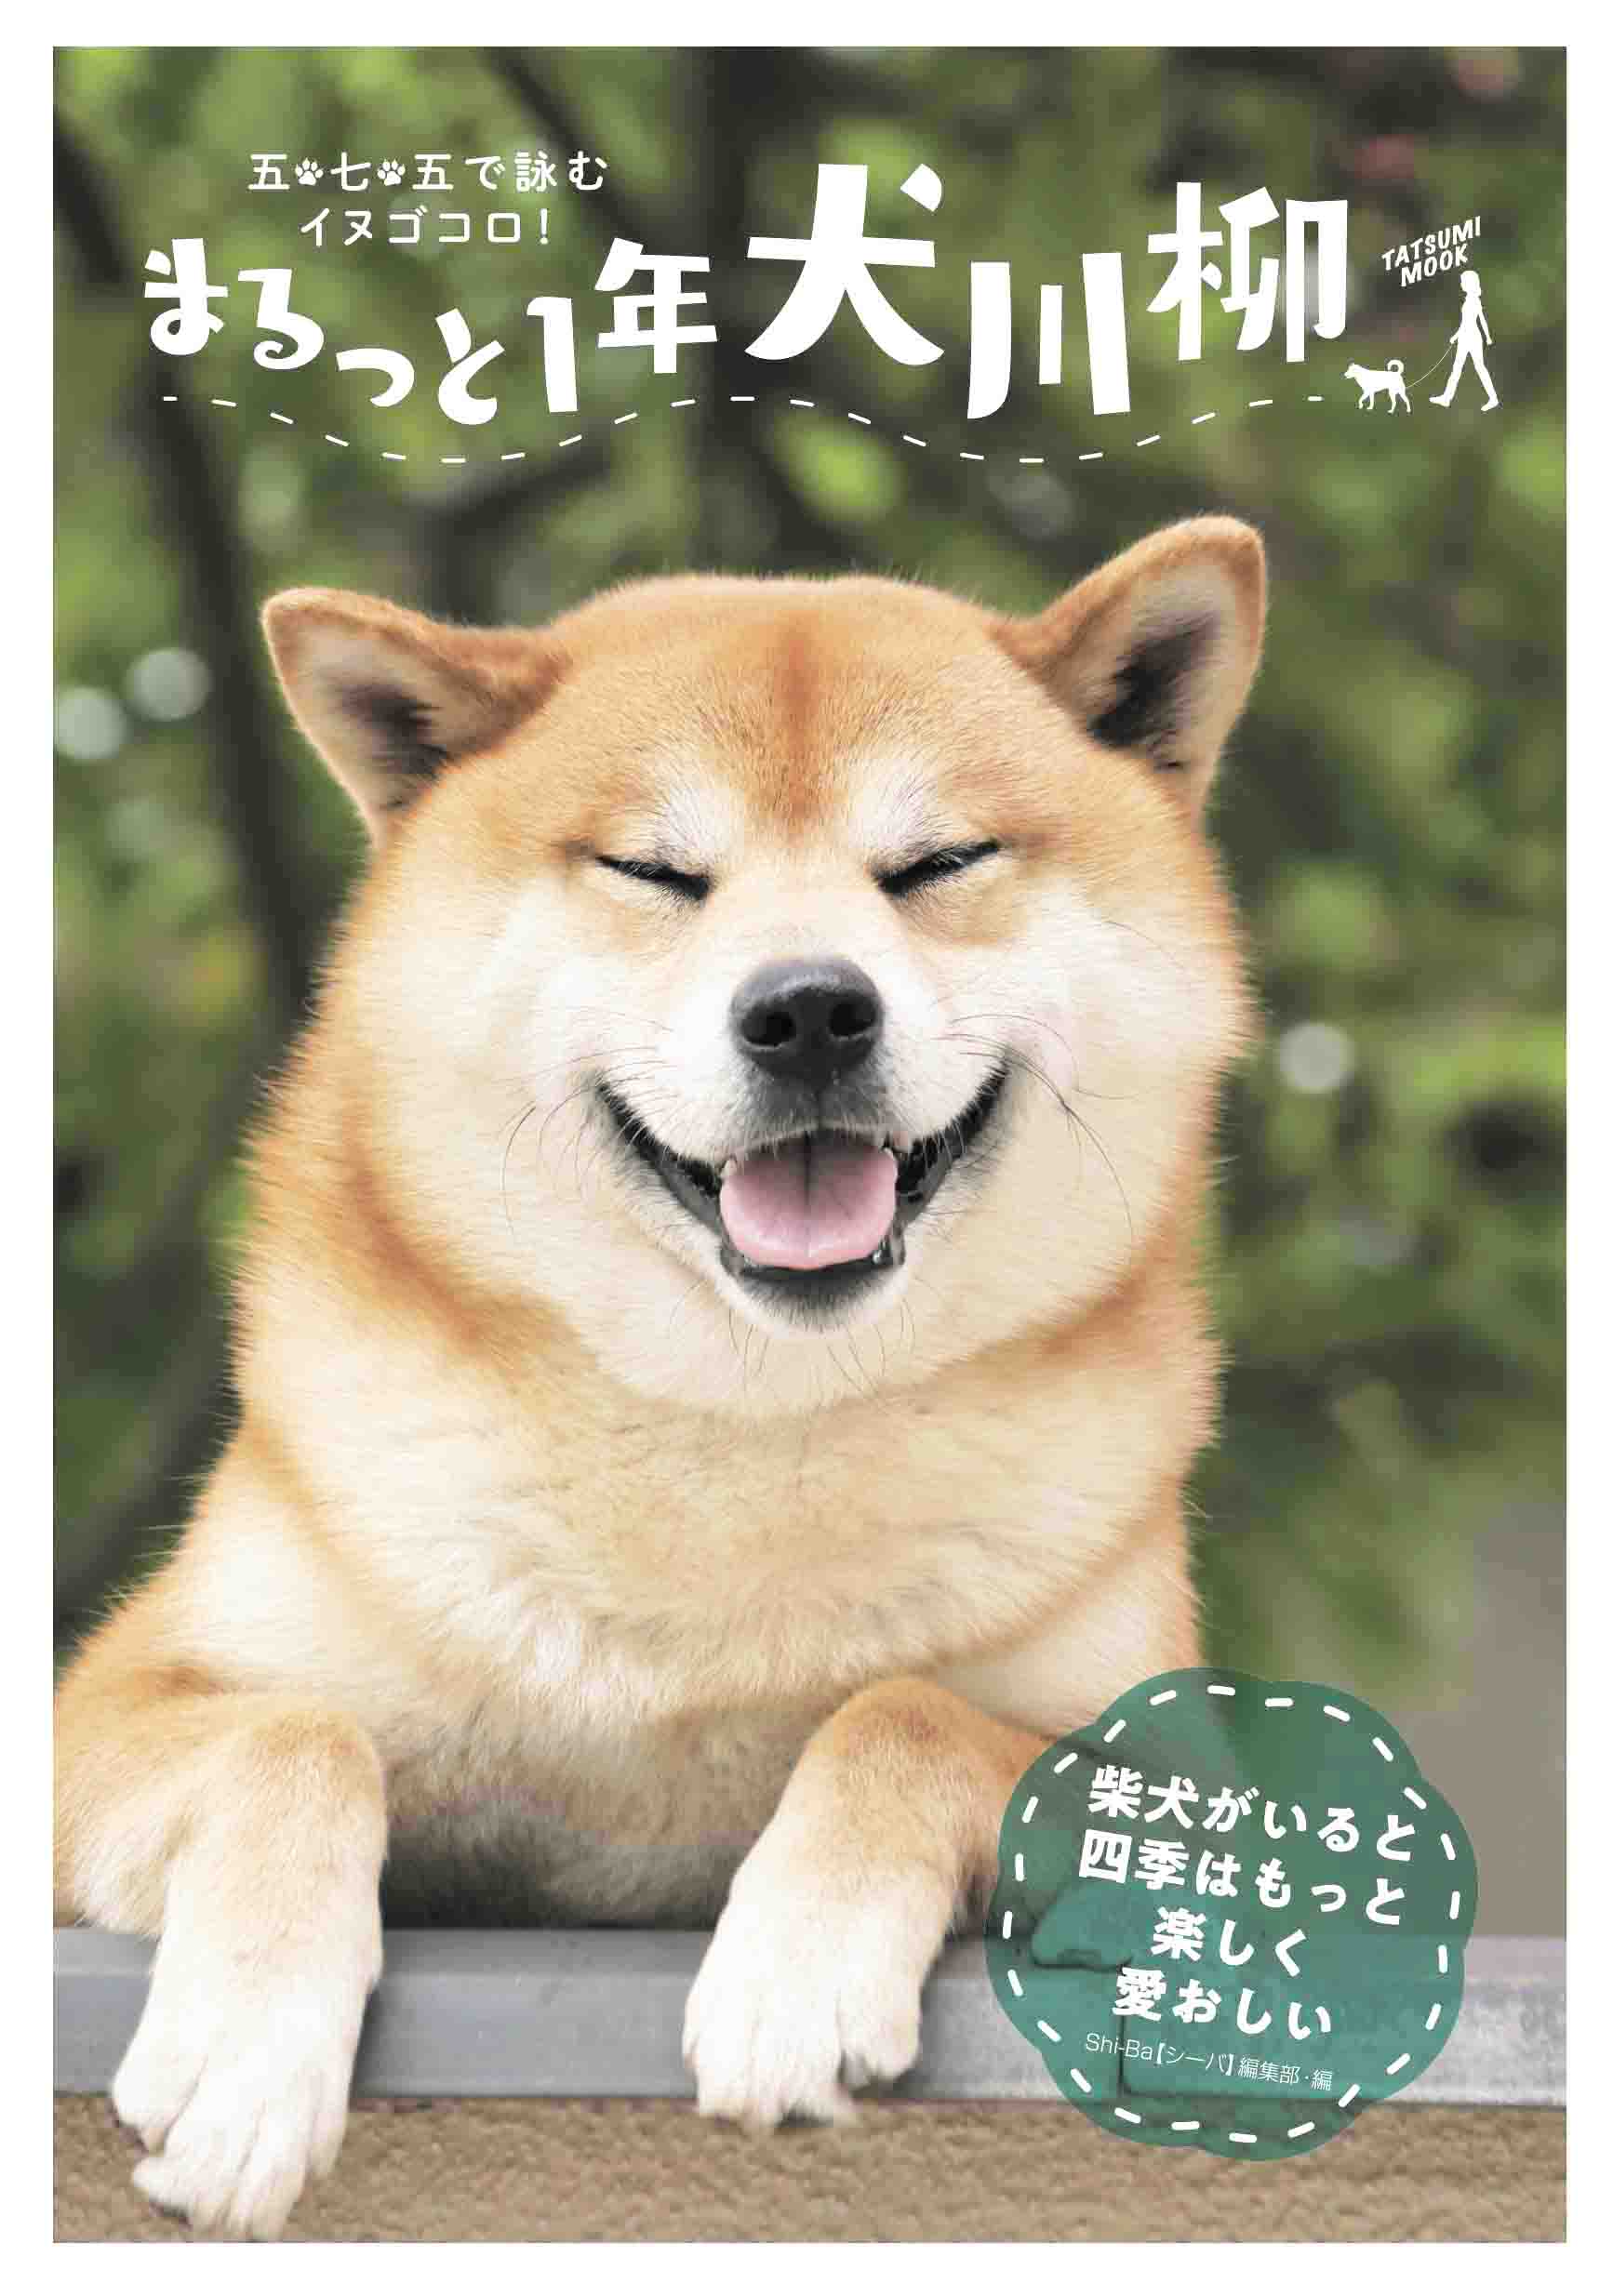 今年も発売 犬川柳 最新刊で川柳募集をスタート Shi Ba シーバ プラス犬びより 犬と楽しく暮らす 情報マガジン